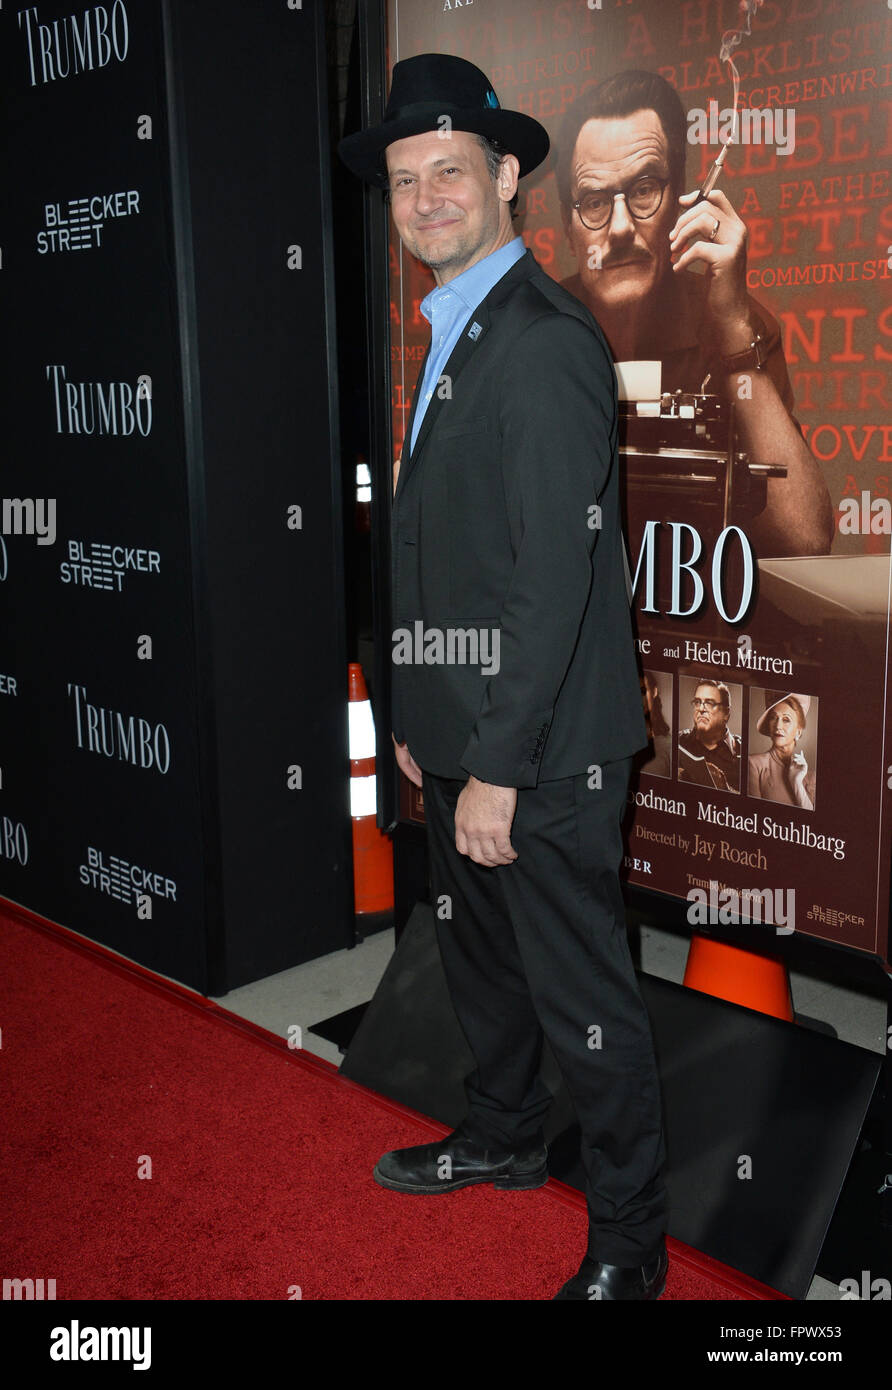 LOS ANGELES, CA - 27. Oktober 2015: Schauspieler Johnny Sneed bei der US-Premiere von "Trumbo" an der Academy of Motion Picture Arts & Sciences, Beverly Hills. Stockfoto